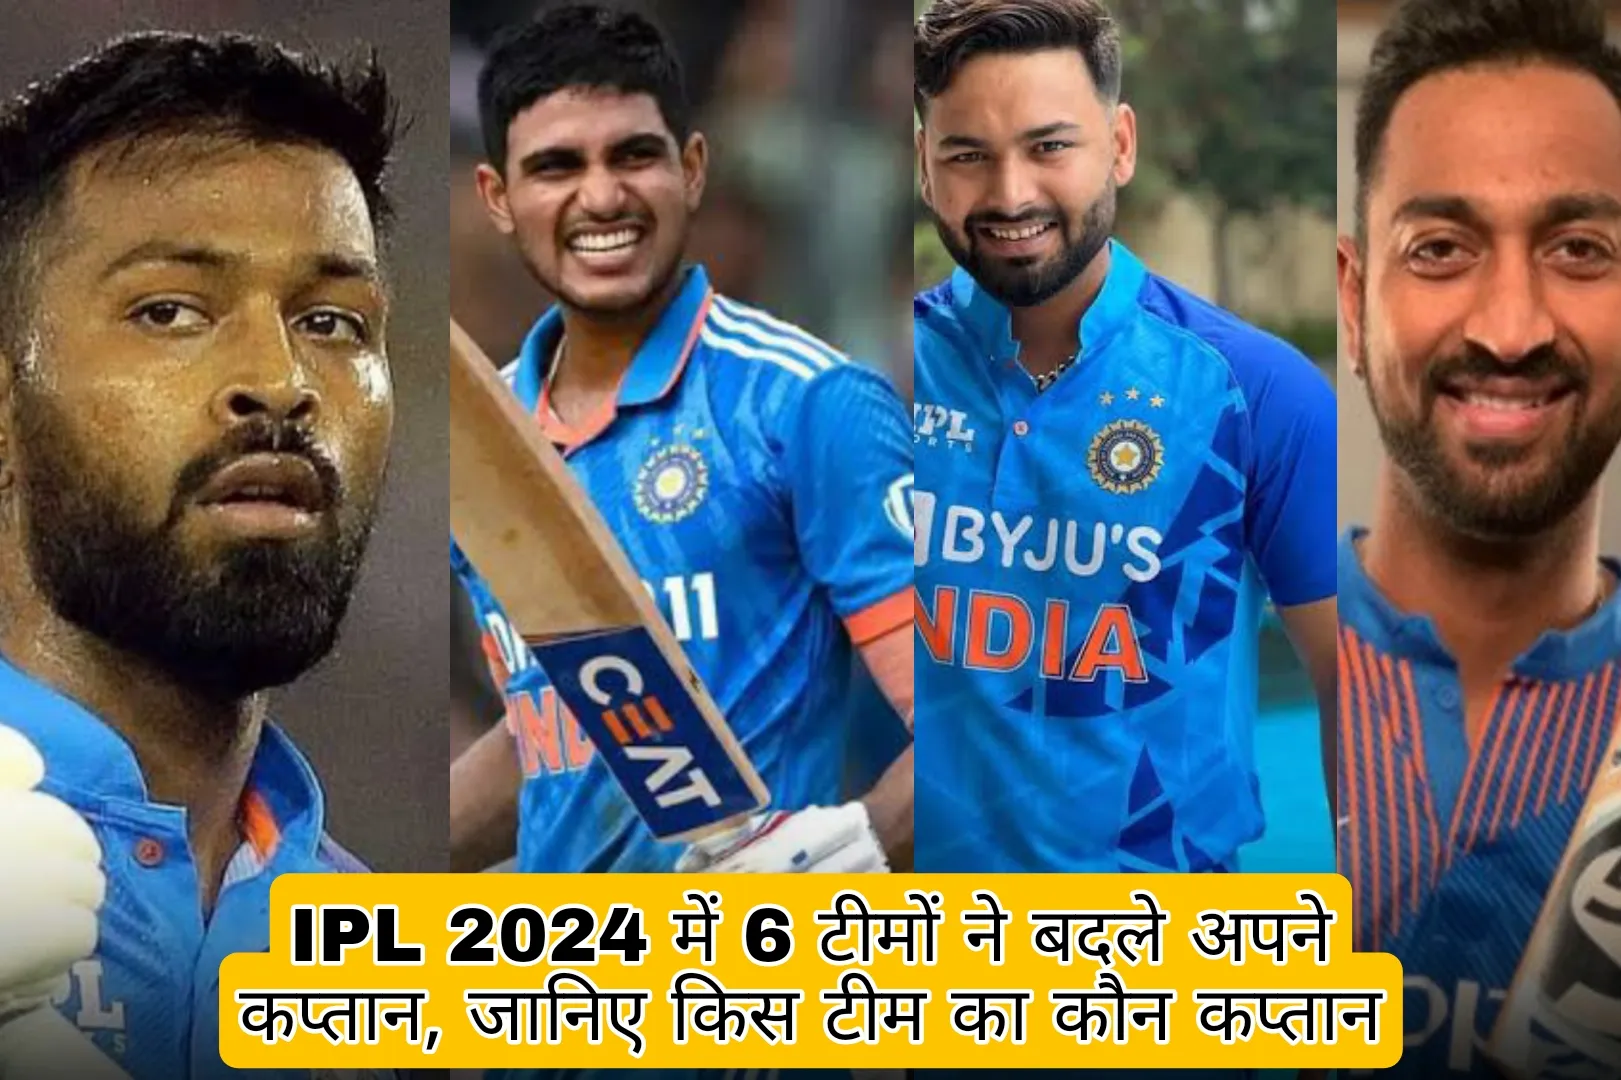 IPL 2024 Updates In Hindi